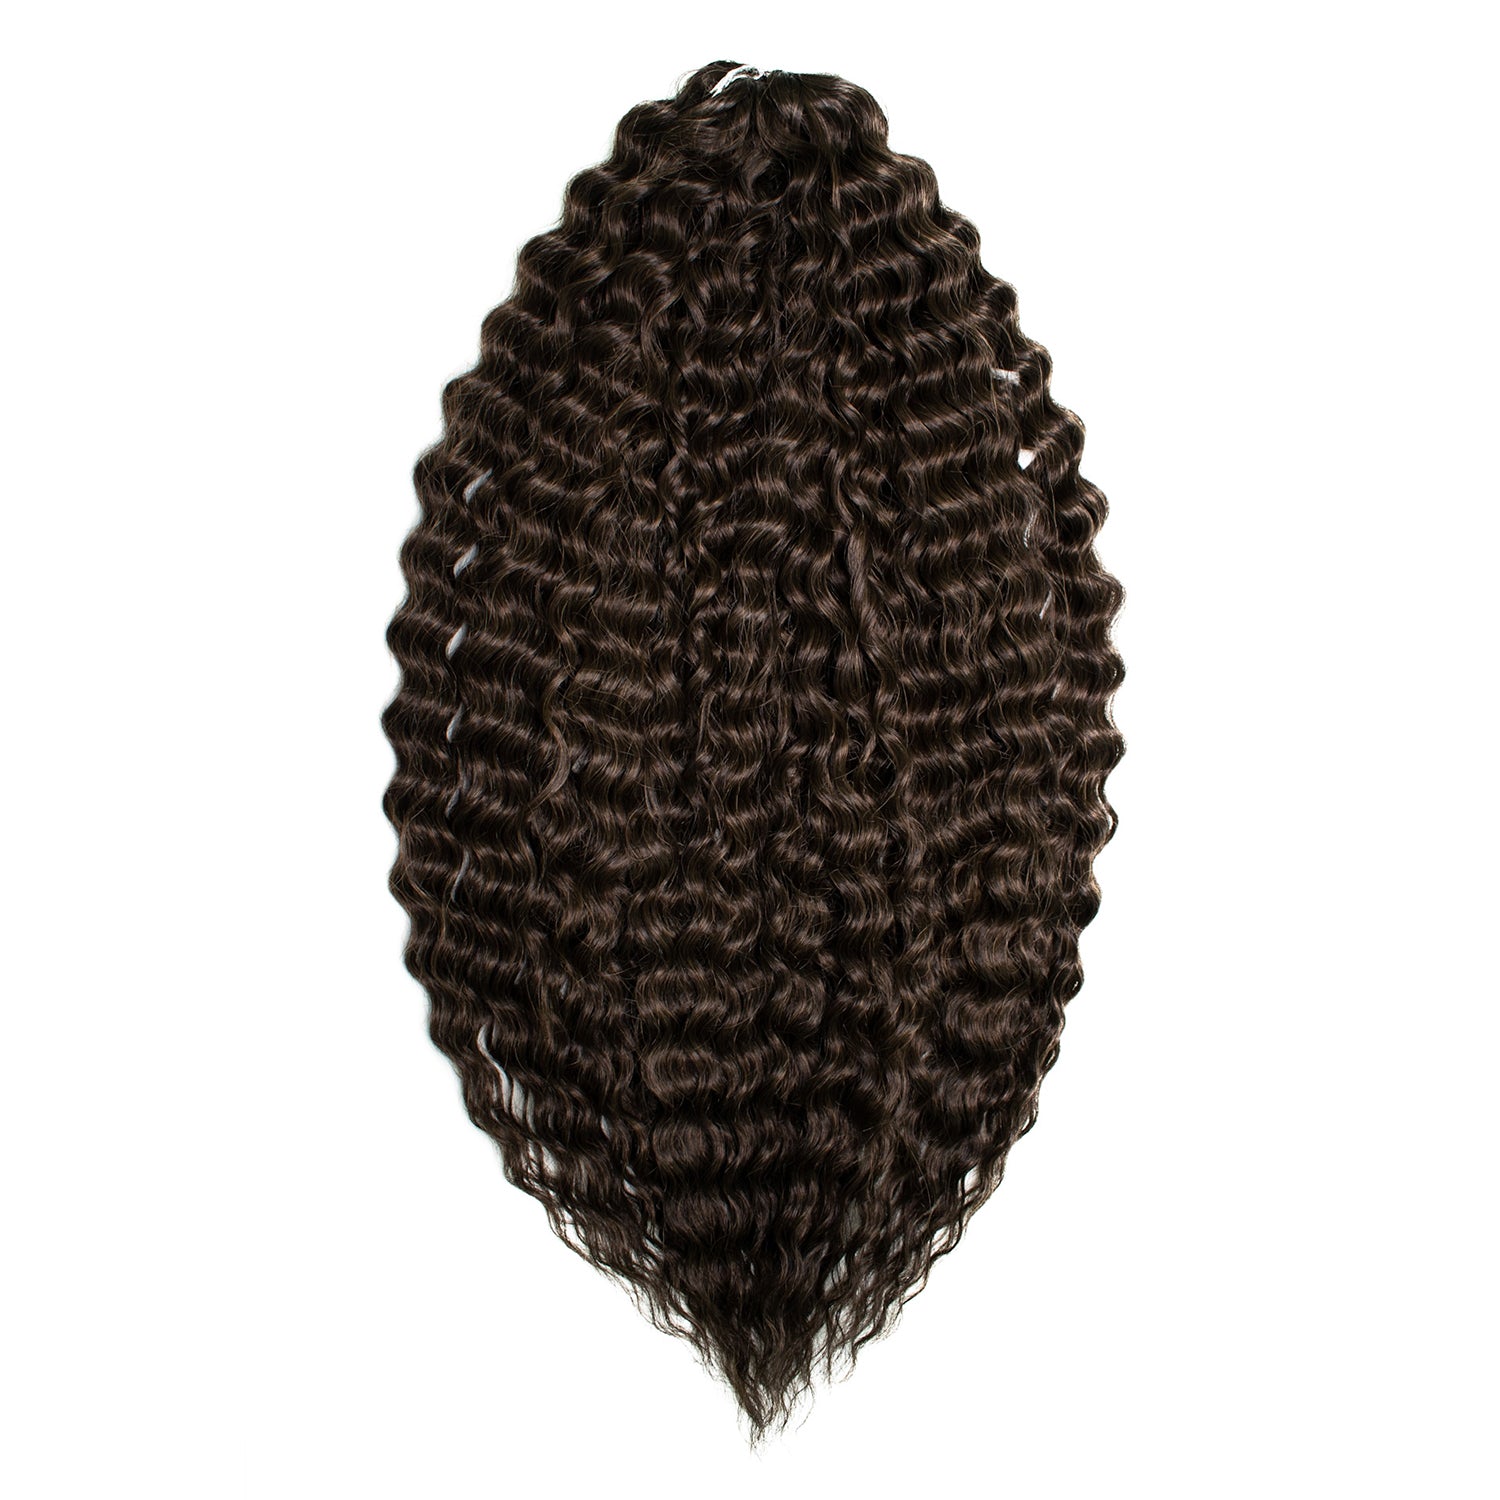 Афрокудри для плетения волос Ariel цвет 10 темно-каштановый длина 60см вес 300г